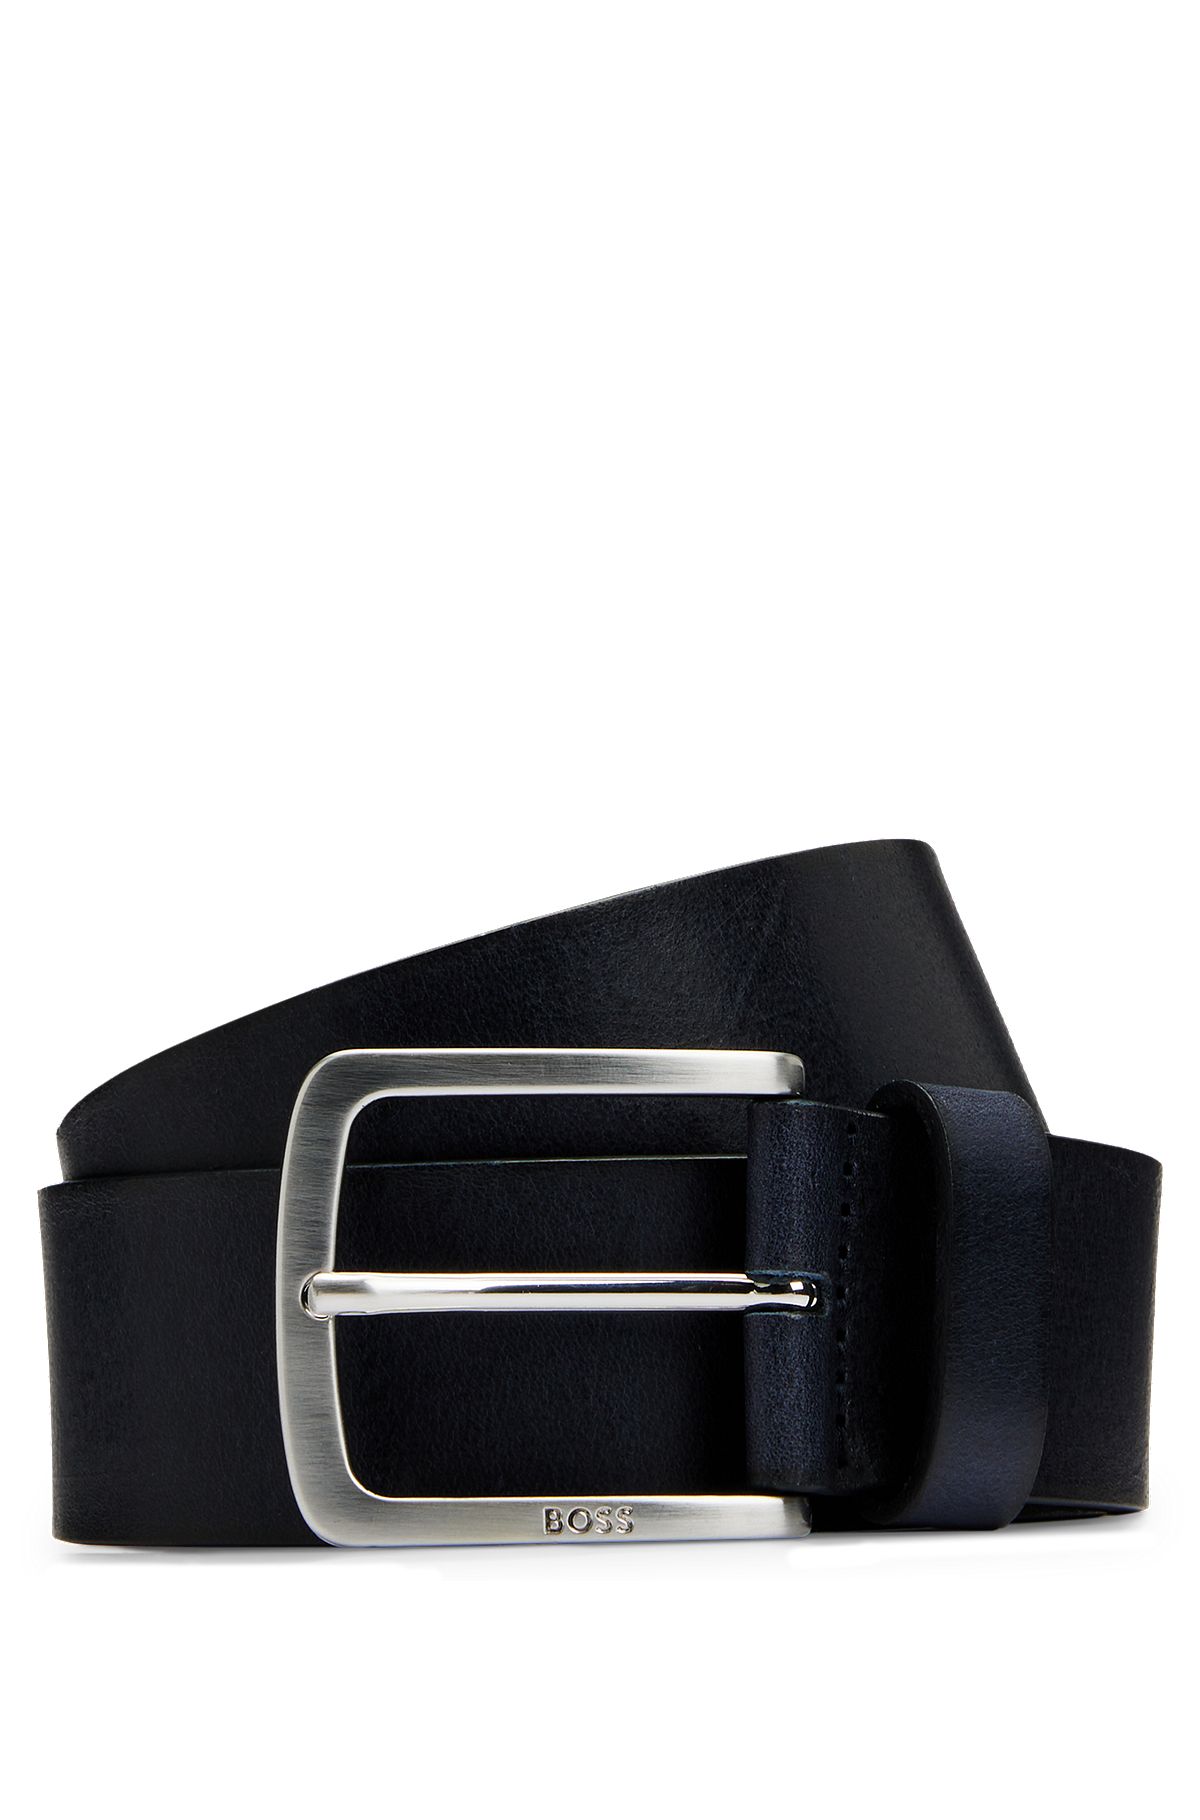 Hebilla de cinturón Hombres Accesorios de negocios Metal Automático para  cinturones de cuero Pretina fondo de primavera Hugo hebillas de cinturón de  los hombres